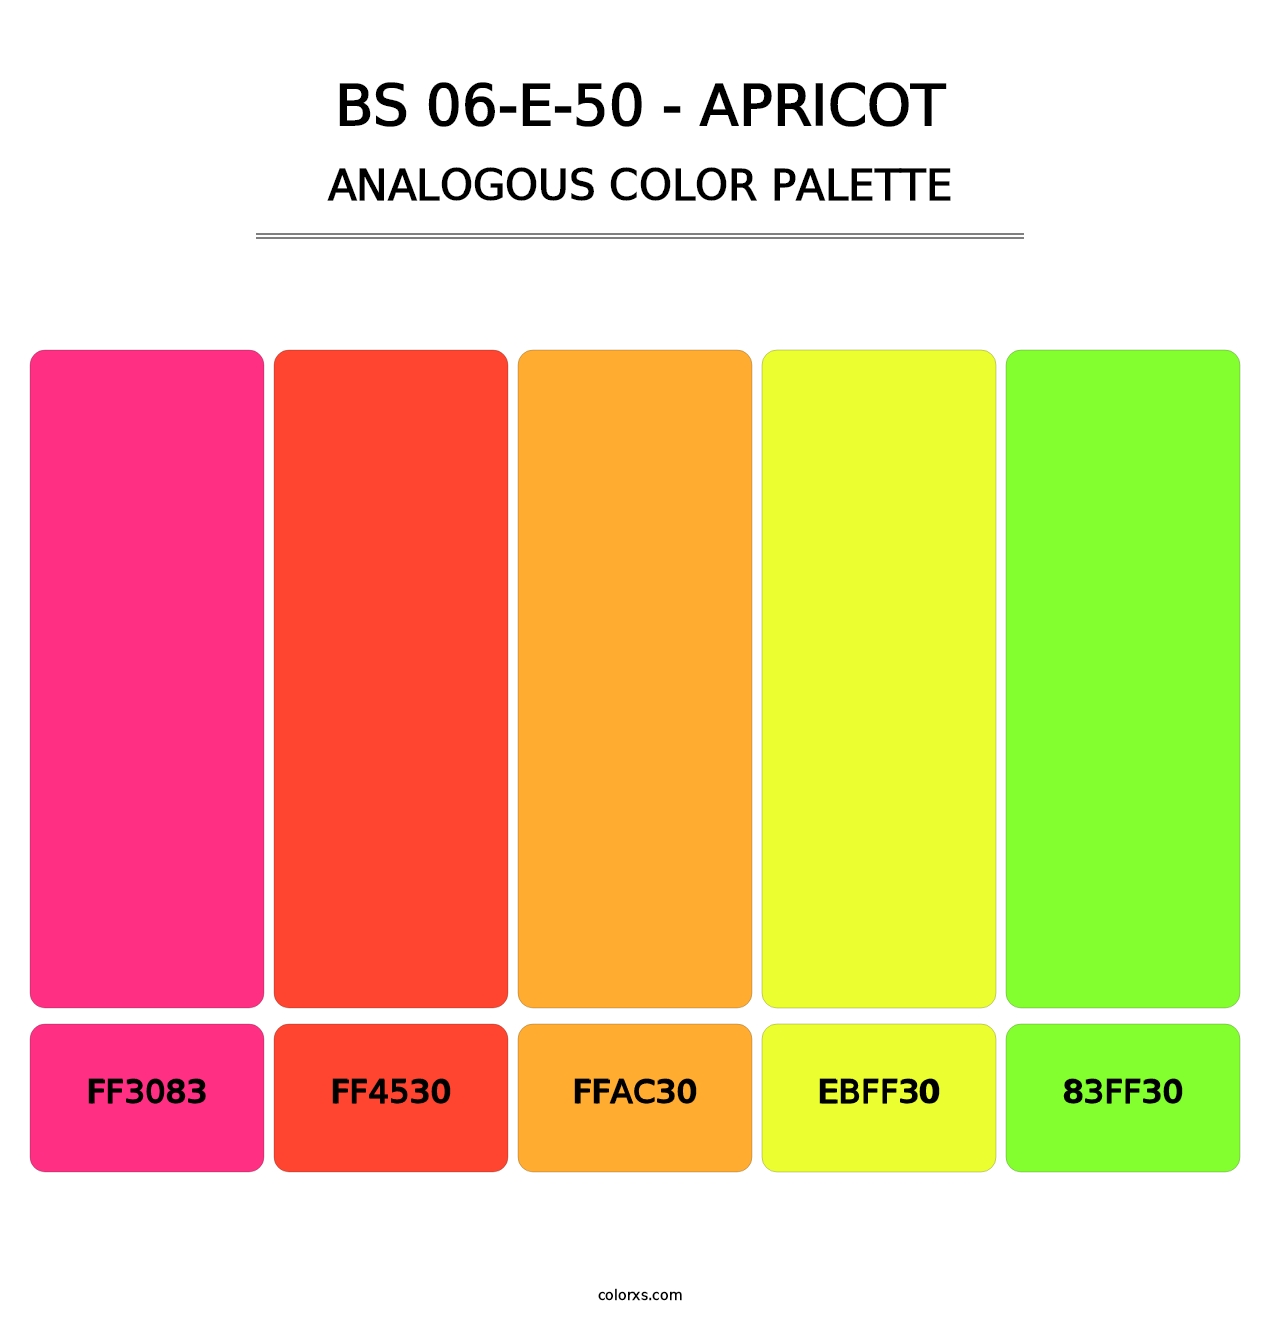 BS 06-E-50 - Apricot - Analogous Color Palette